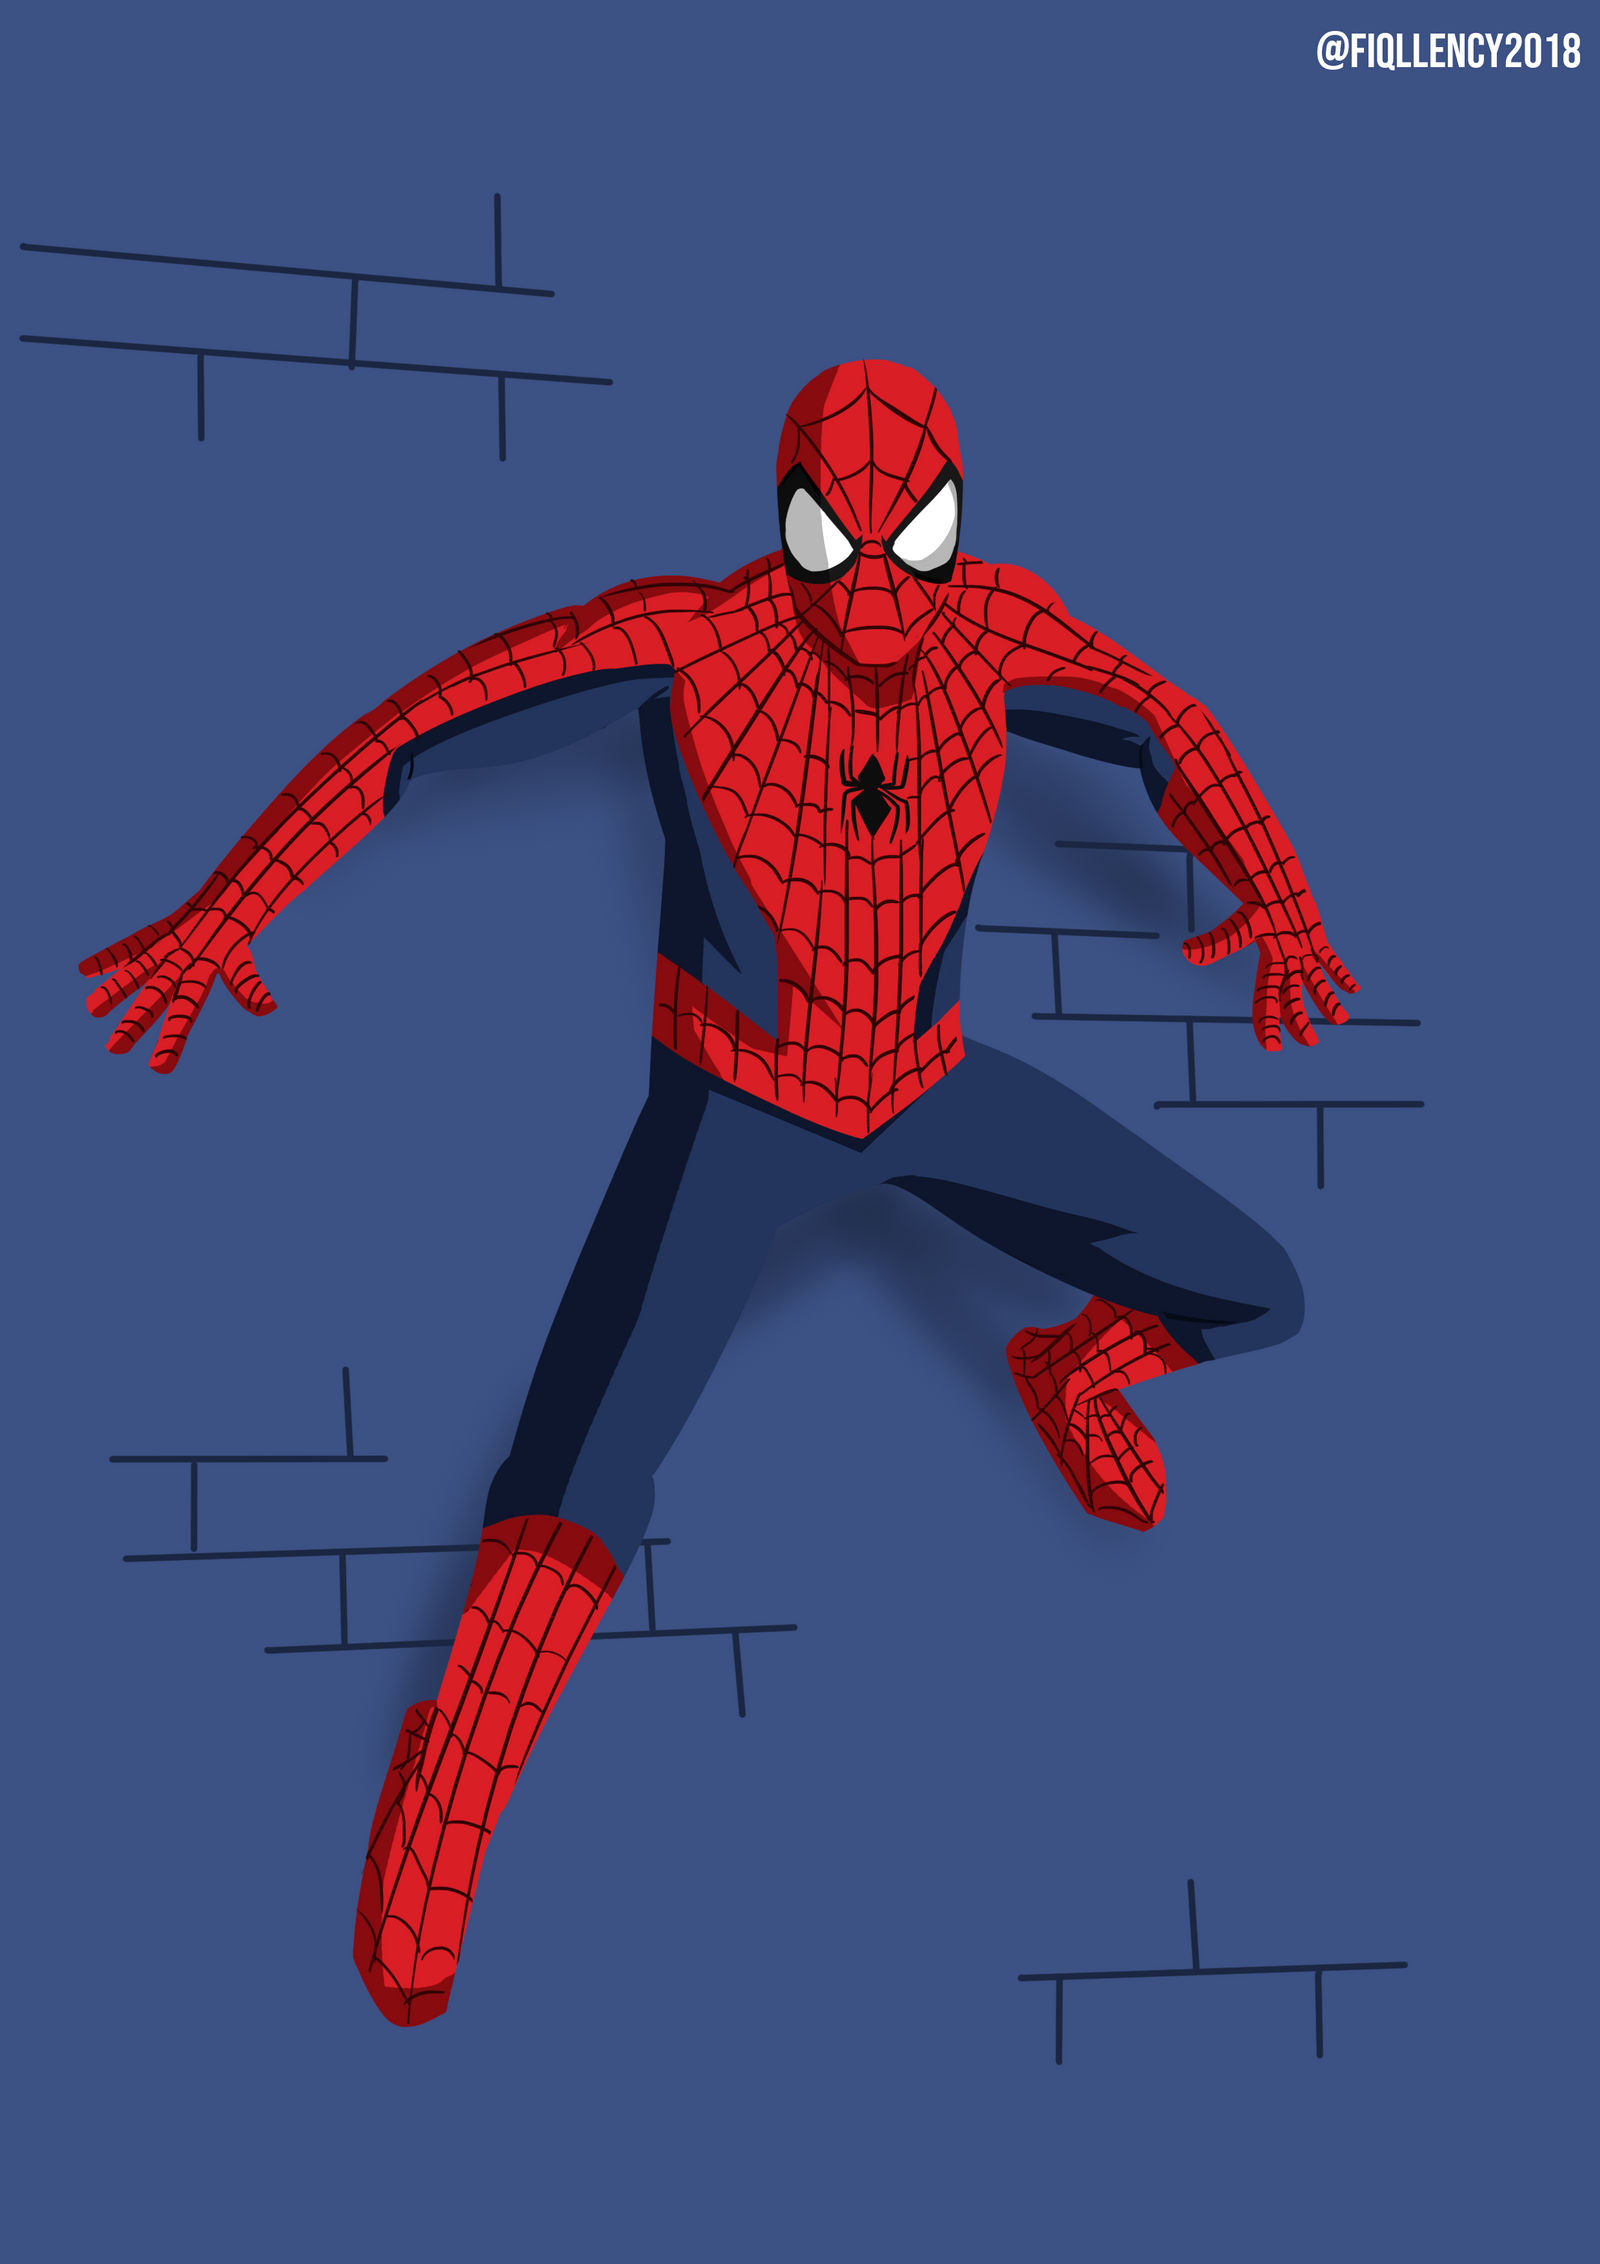 Spiderman (Stan Lee tribute) by Fiqllency on DeviantArt